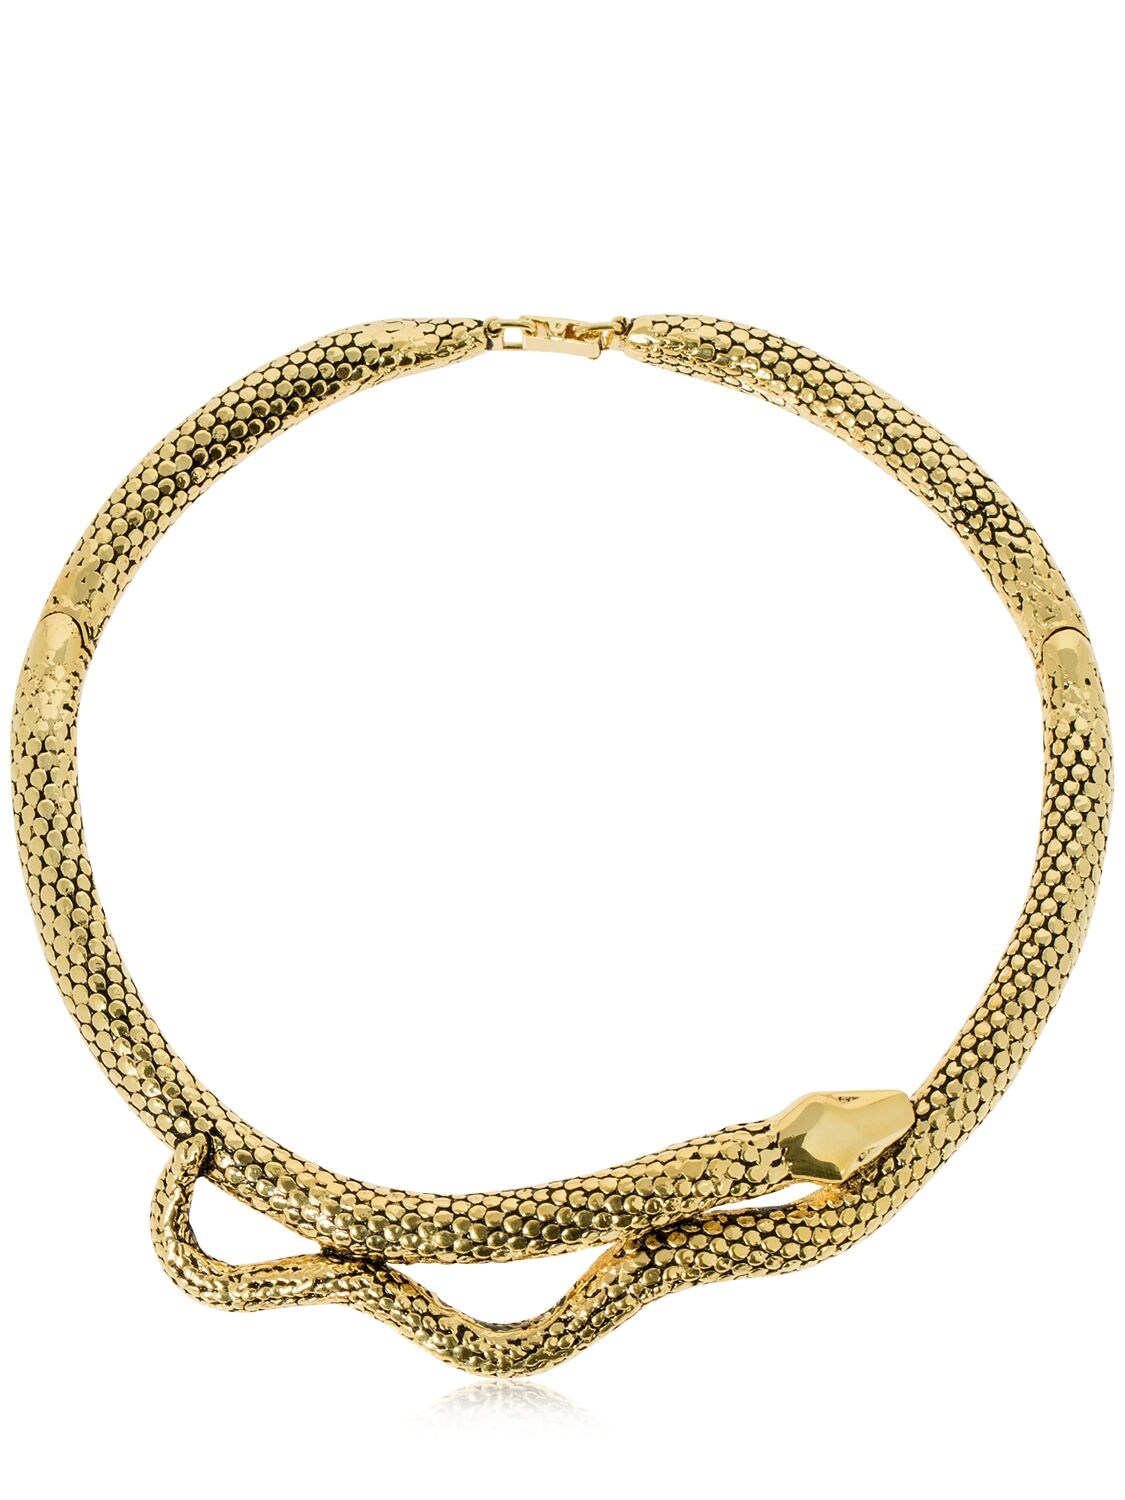 Aurelie Bidermann Tao Collier Serpent Necklace In Gold